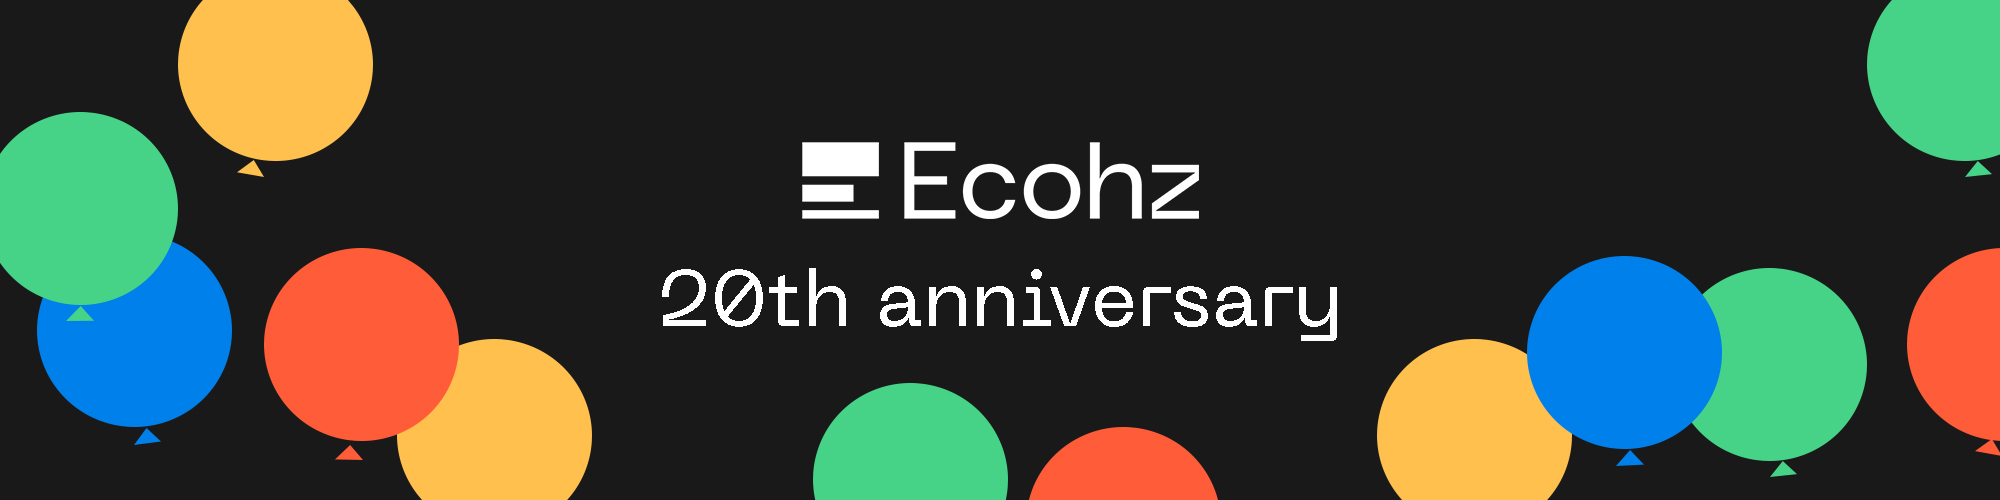 Ecohz anniversary 1